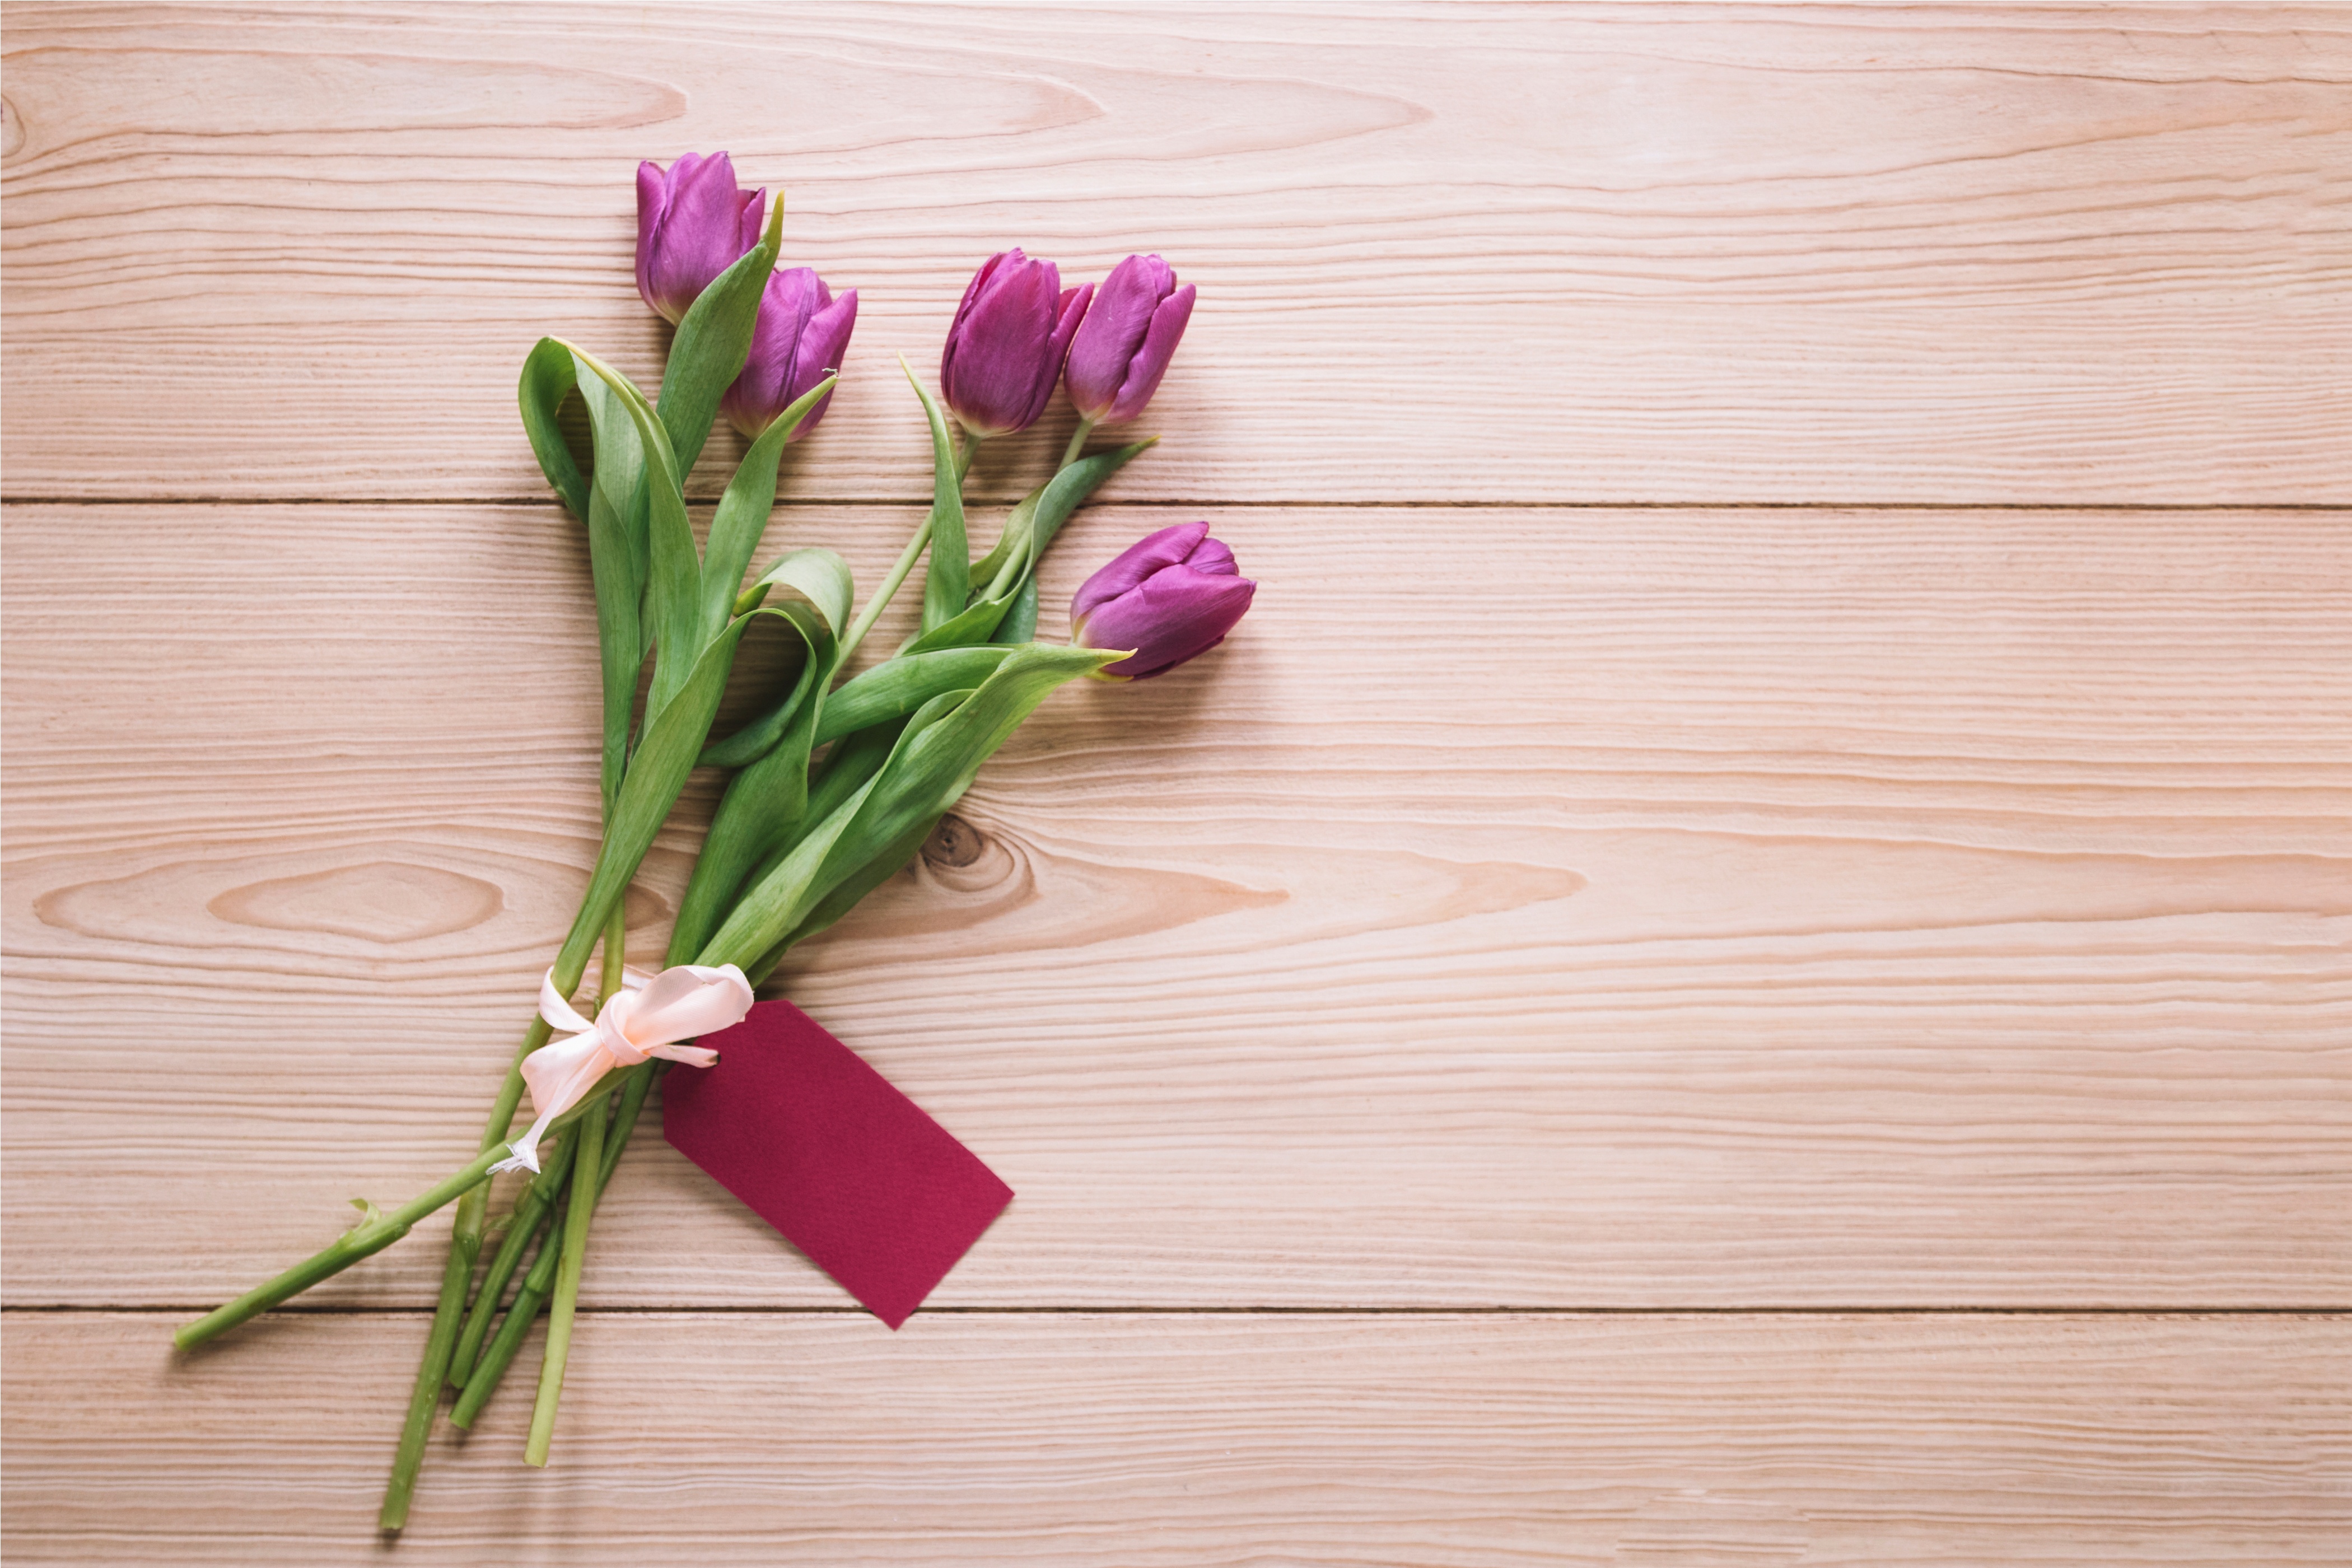 Flower wood мм2. Цветы на деревянном фоне. Тюльпаны фон. Букет тюльпанов на деревянном фоне. Тюльпаны на деревянном столе.